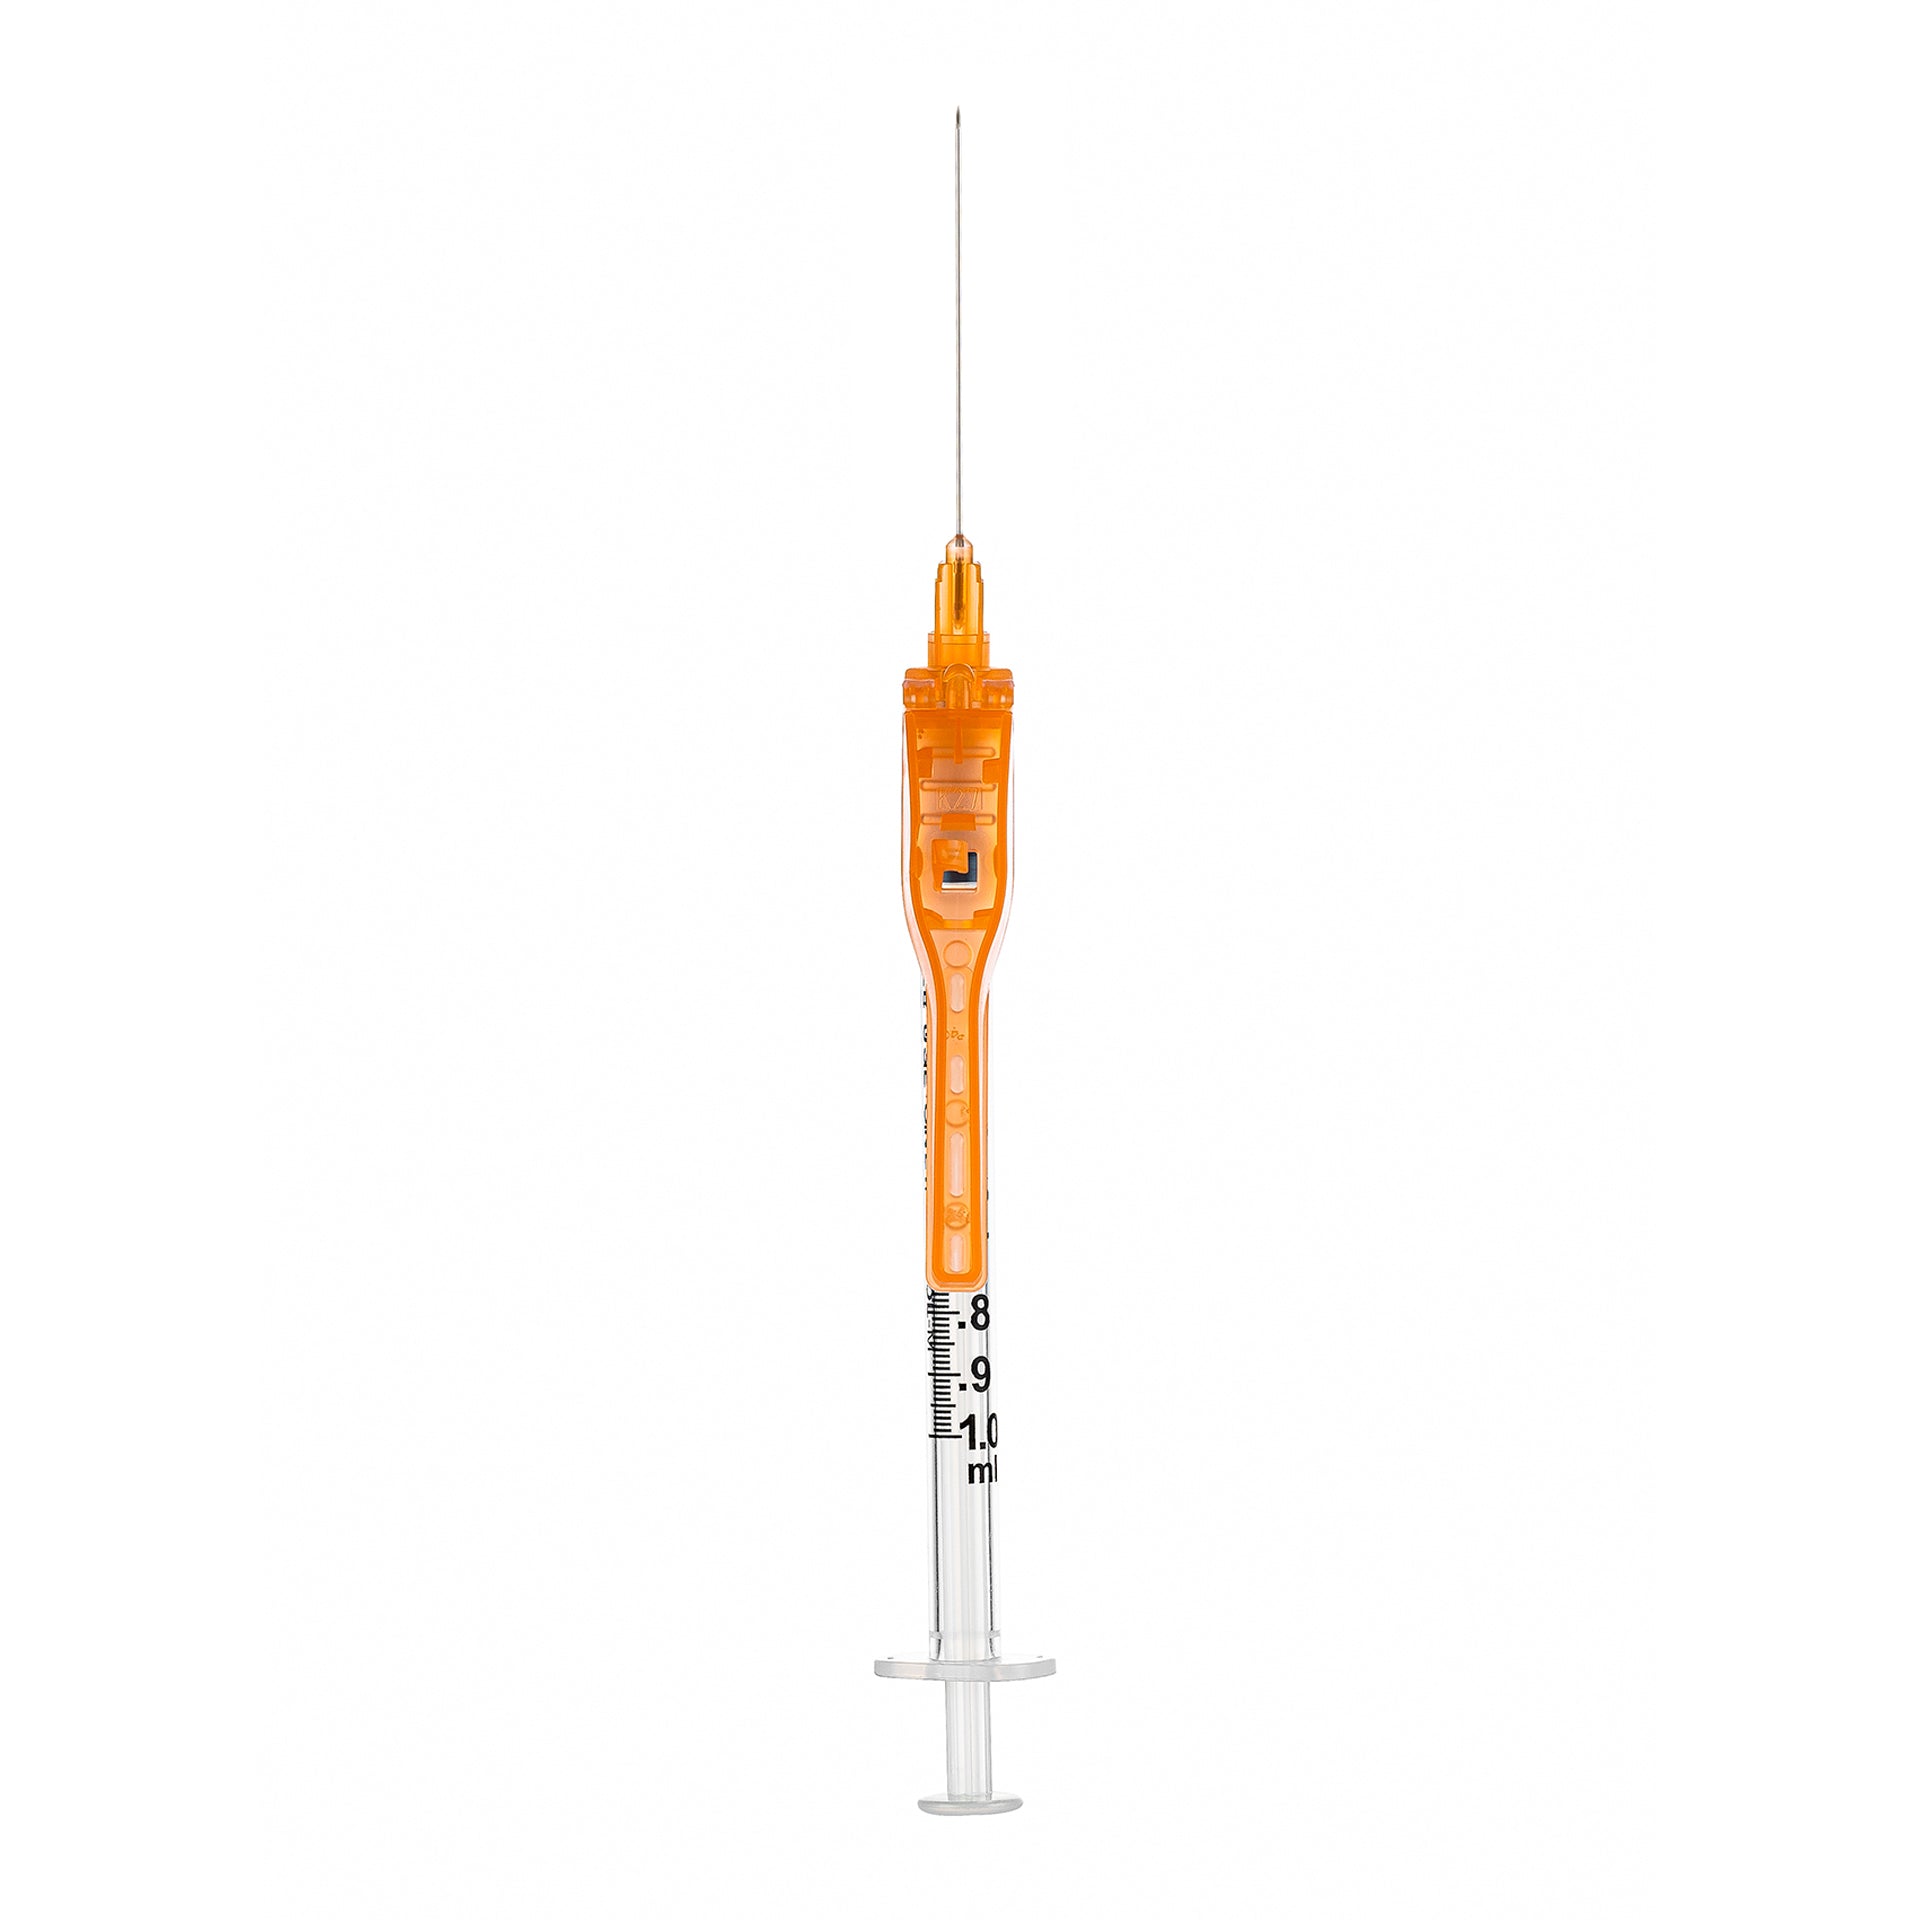 BX/50 - SOL-CARE 3ml Luer Lock Syringe w/Safety Needle 25G*1 (needle aside)